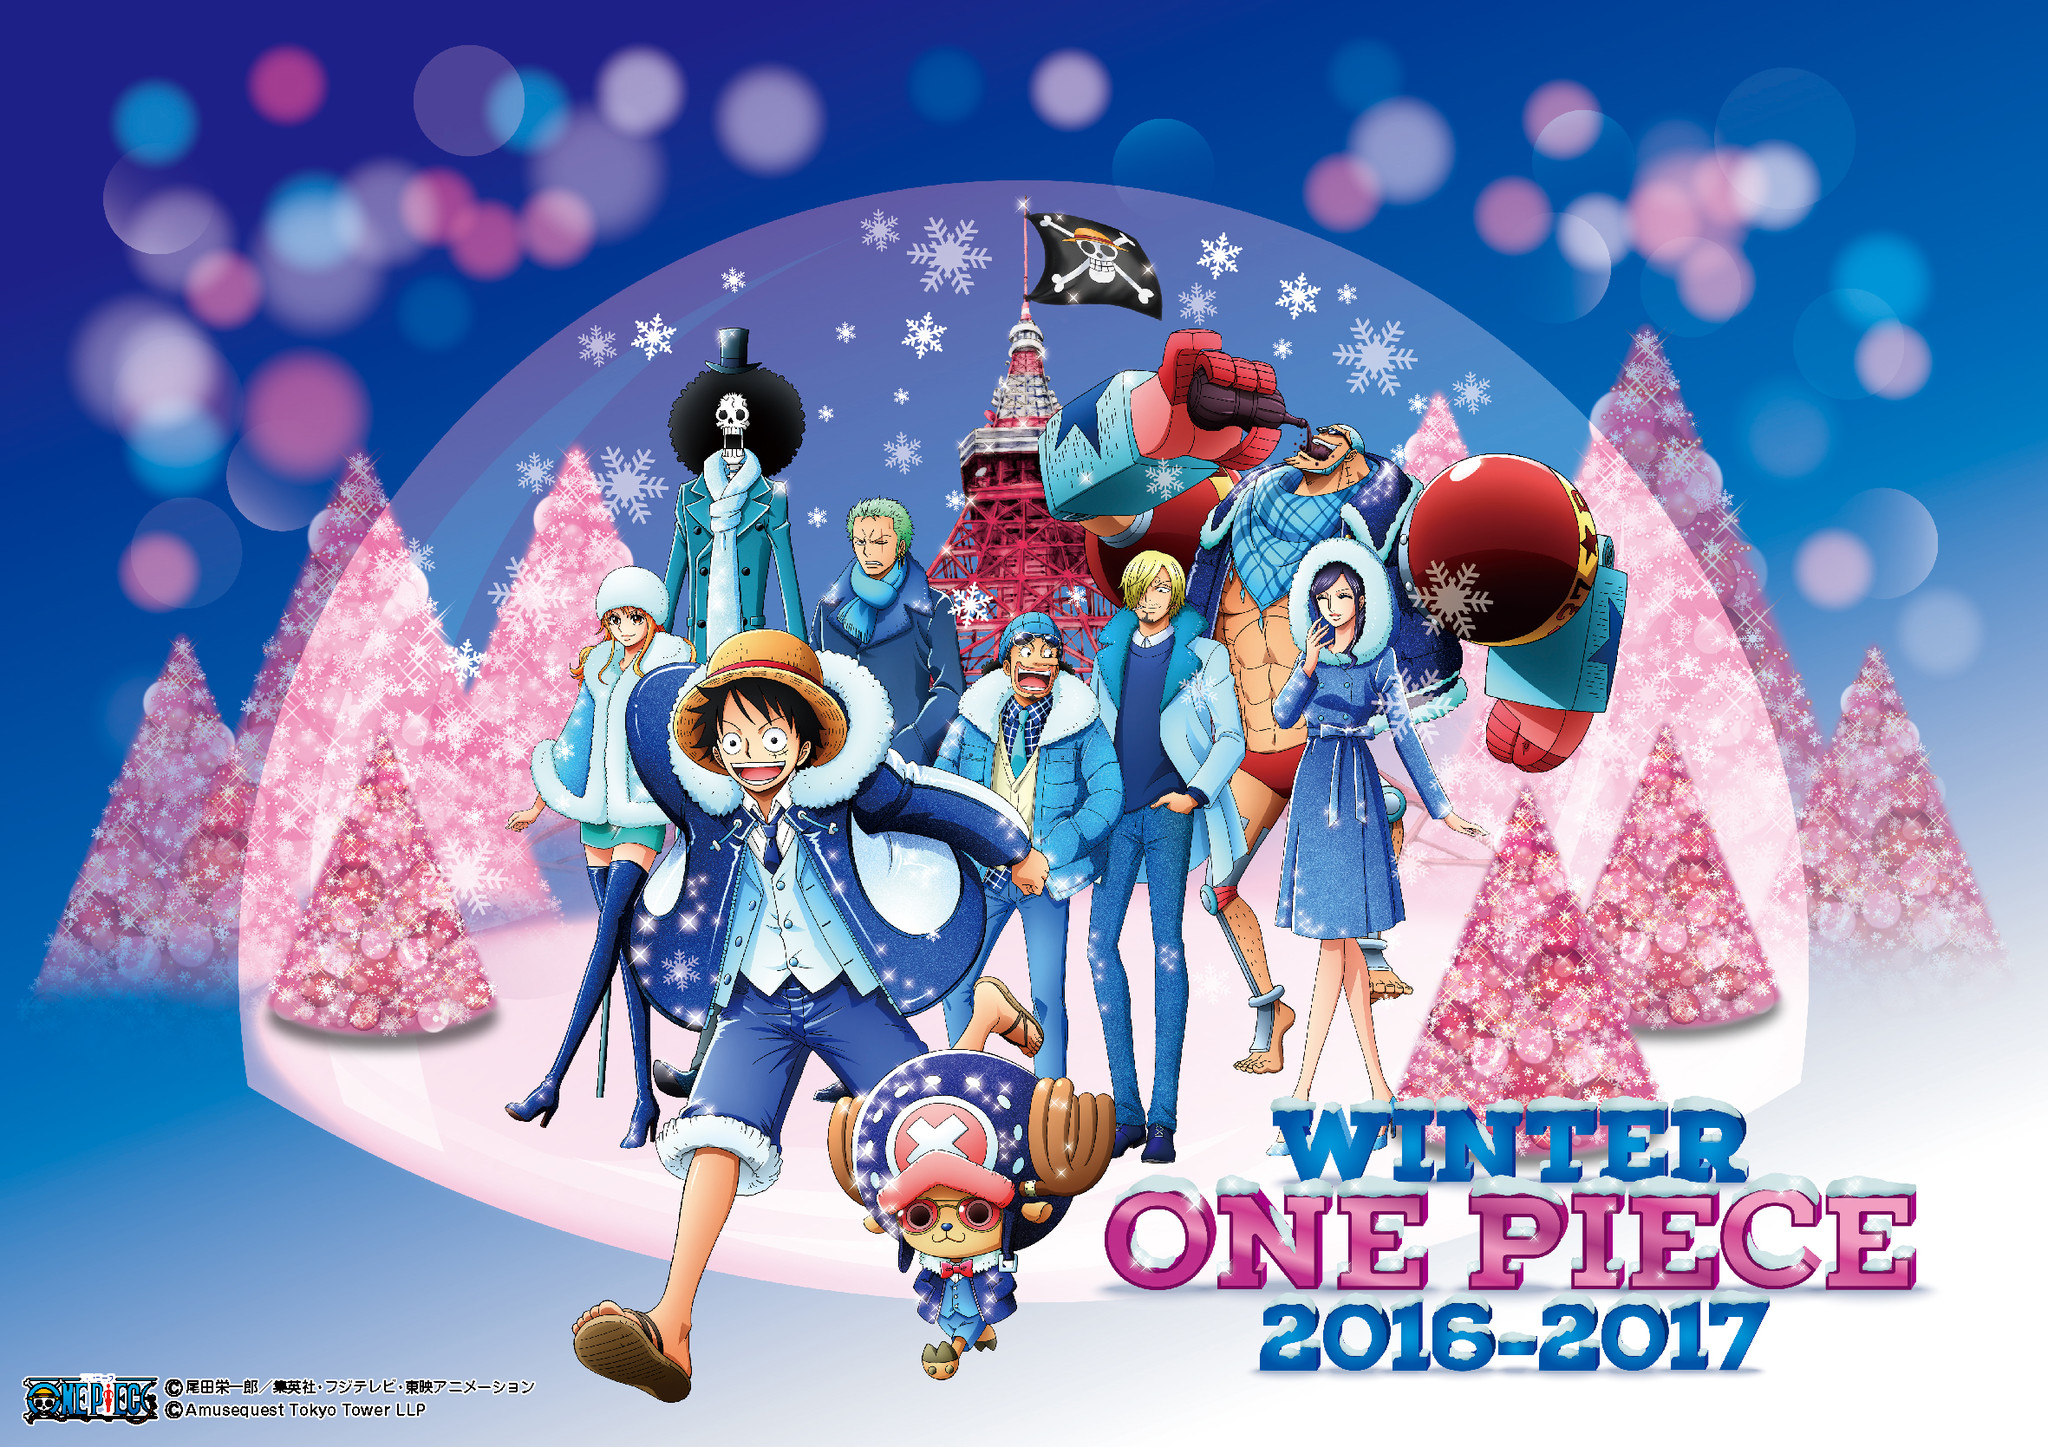 東京ワンピースタワー冬限定イベントがいよいよスタート Winter One Piece 16 17 この冬を 宝物にしよう 東京ワンピース タワーのプレスリリース